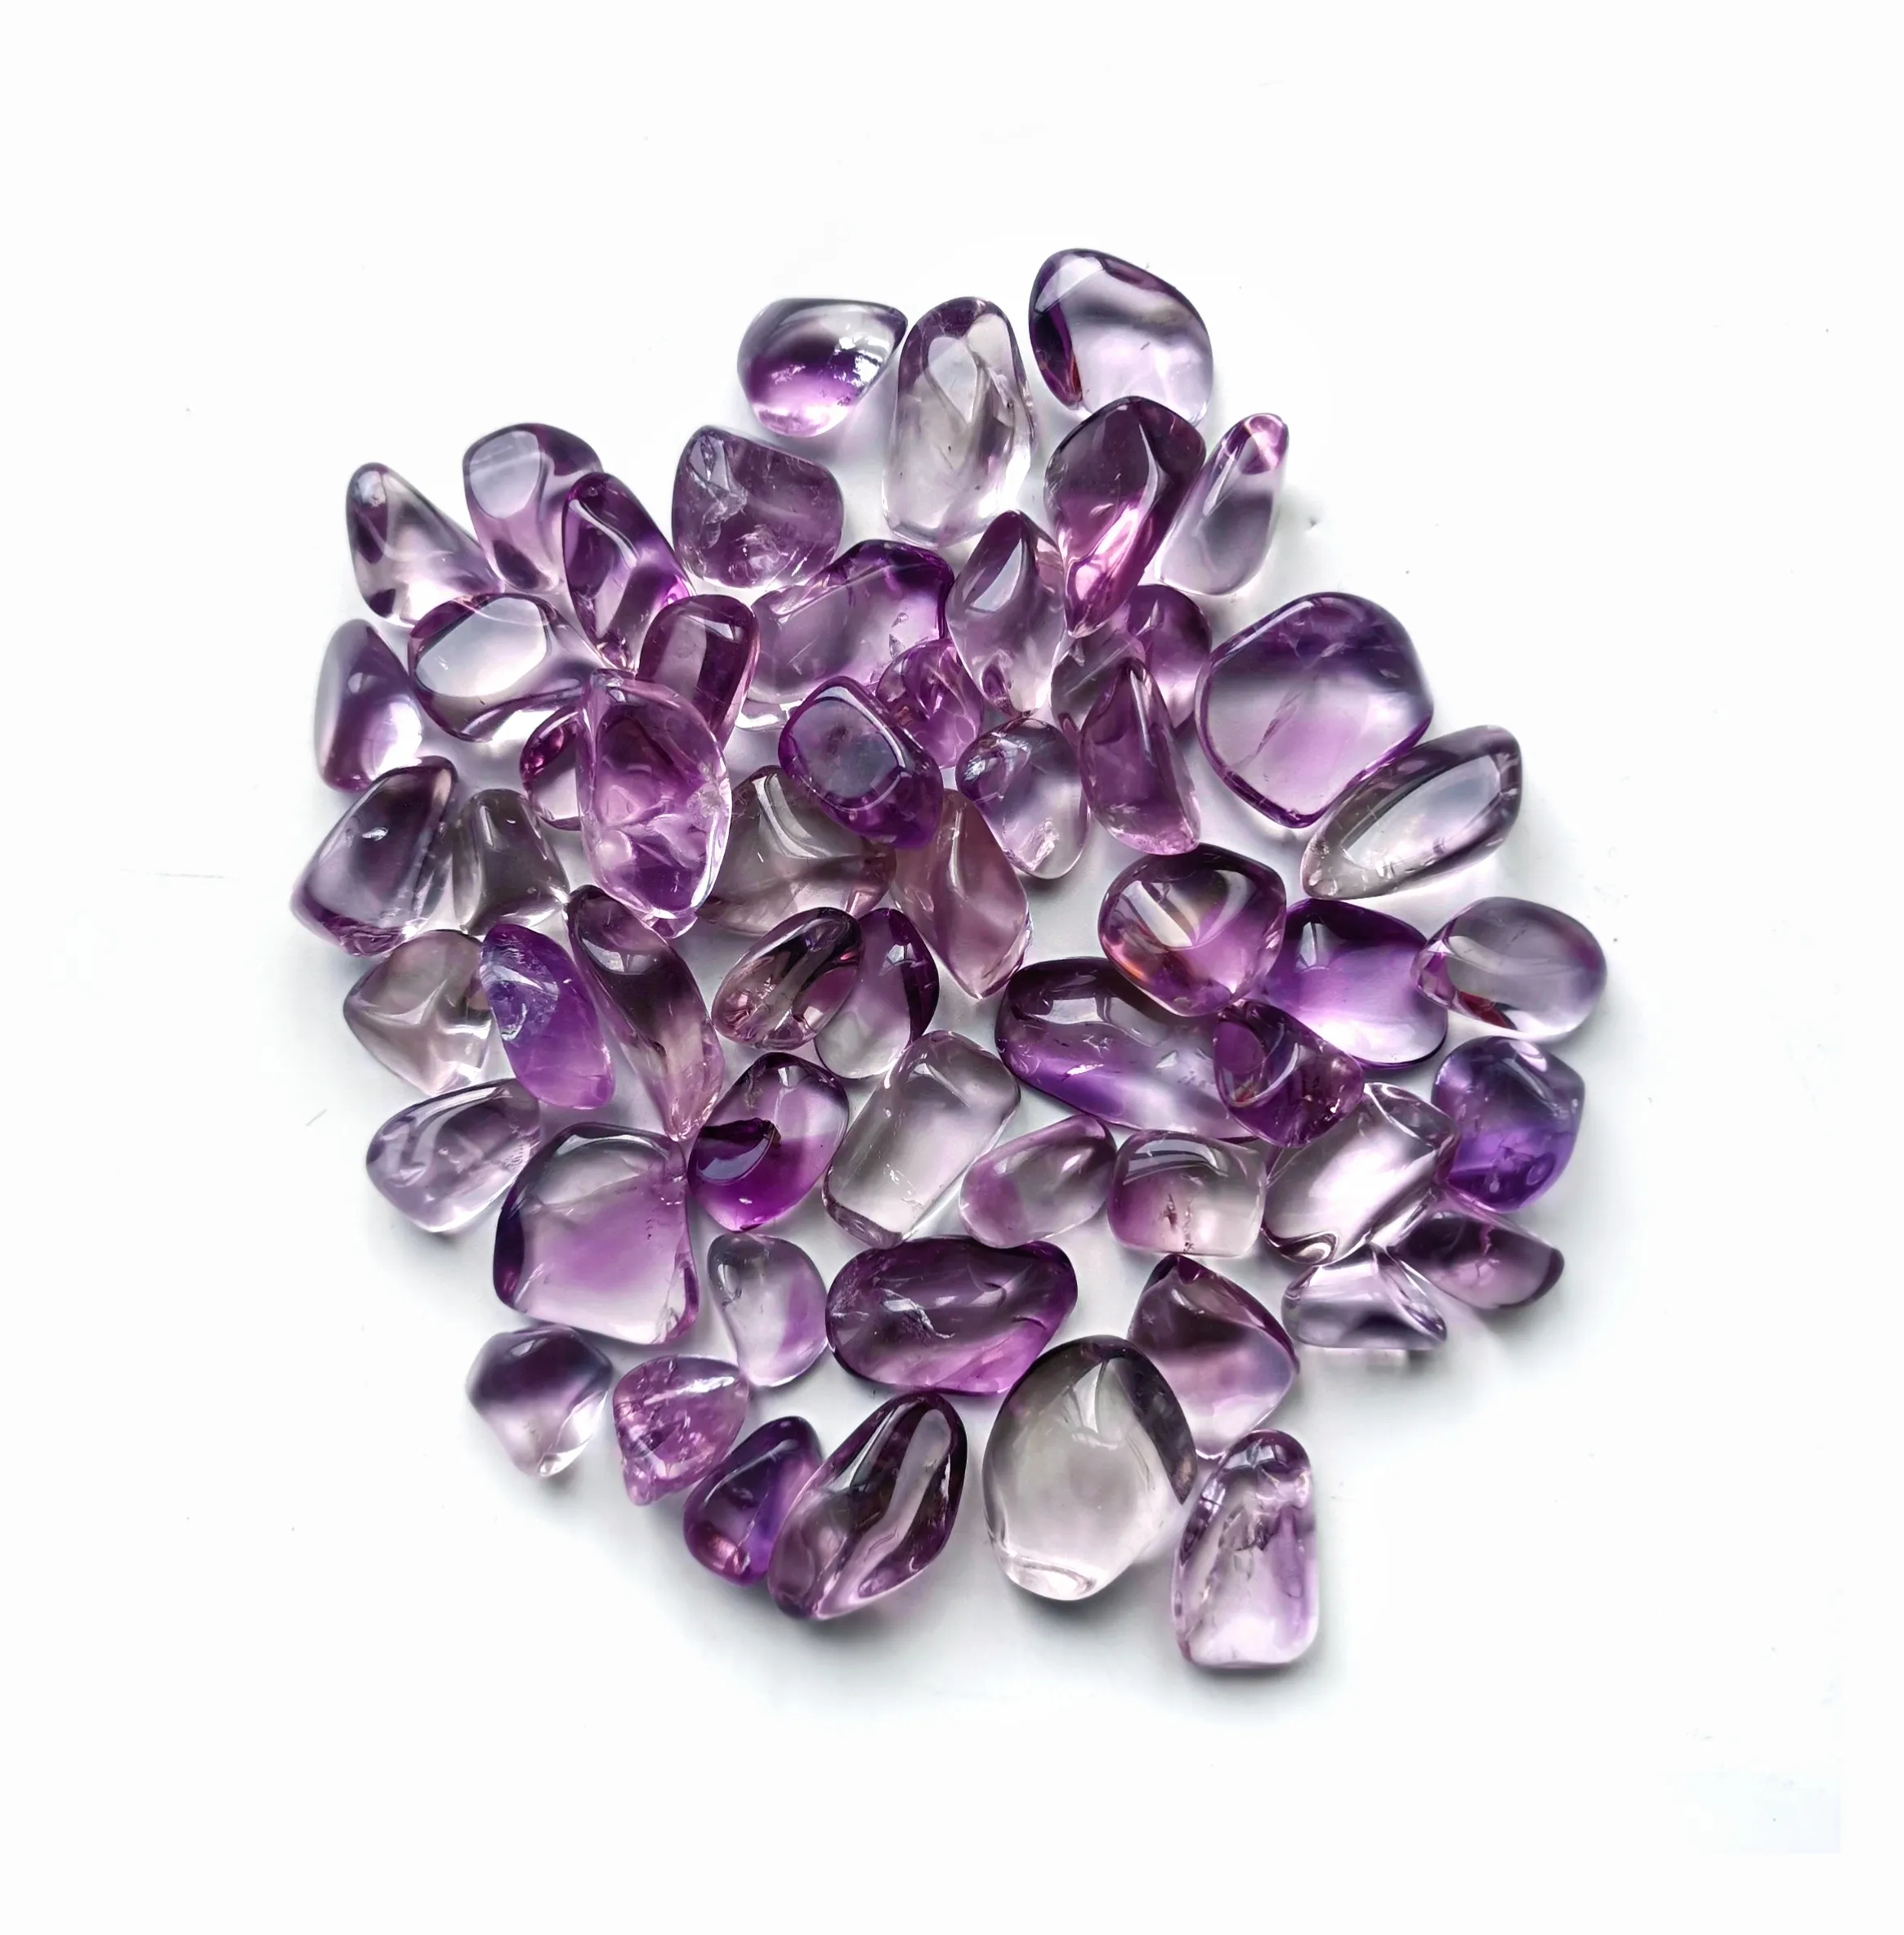 20-30 mm Wholesale Natural Gemstone Polished Light Purple Amethyst Reiki Crystal Tumble Stones